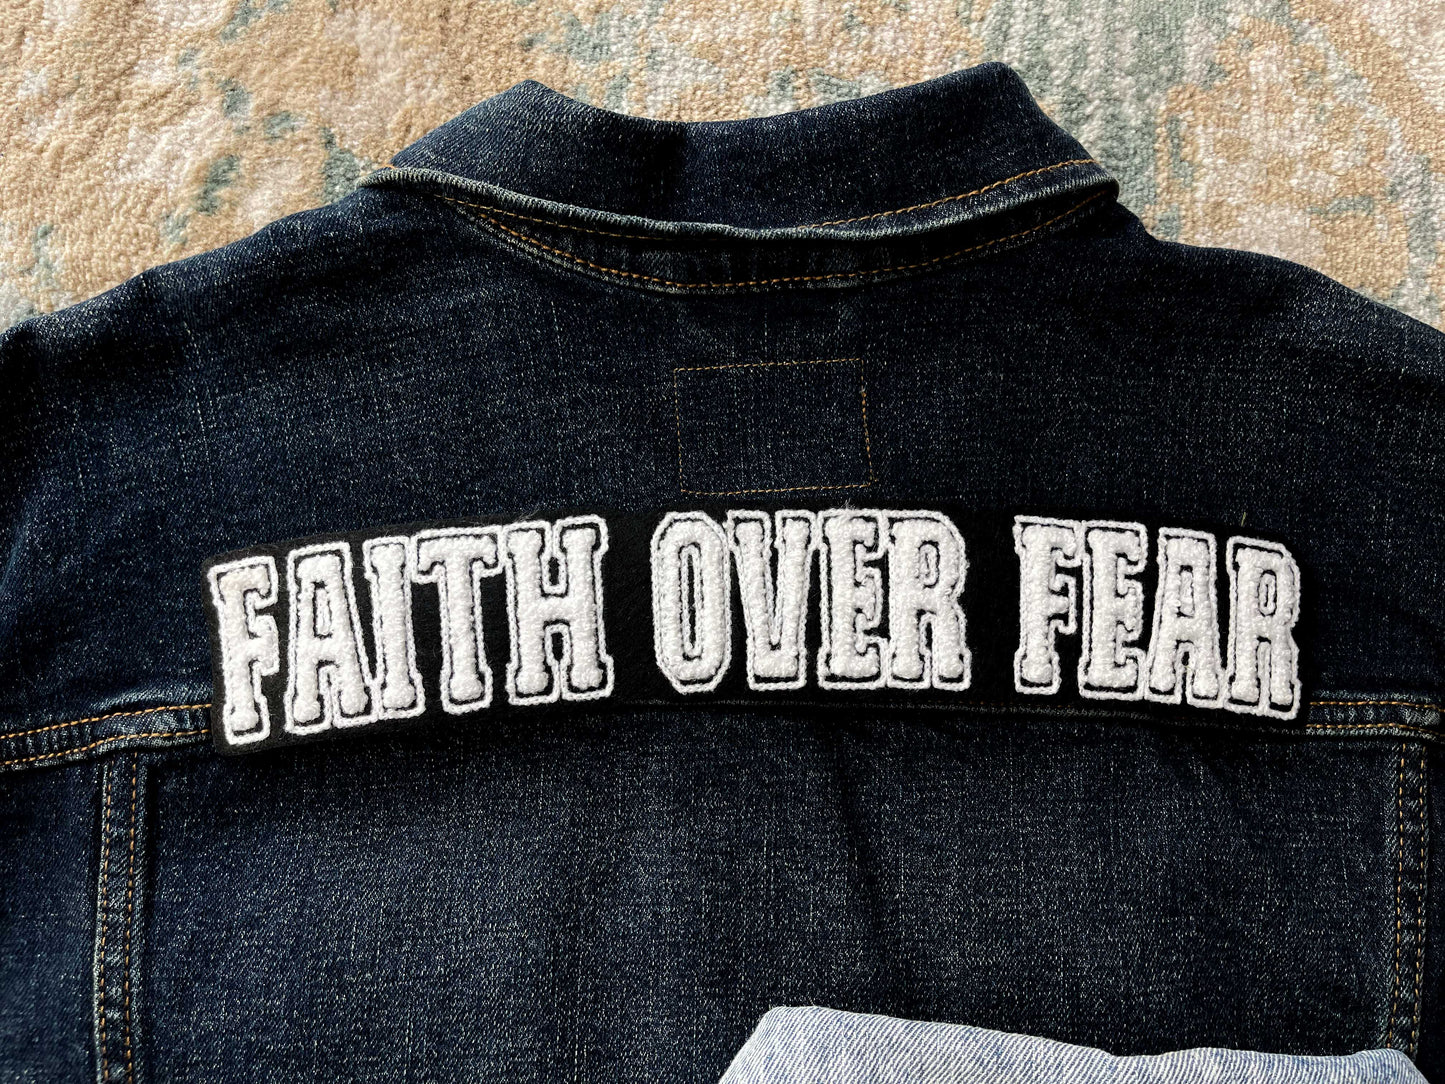 Faith Over Fear Patch